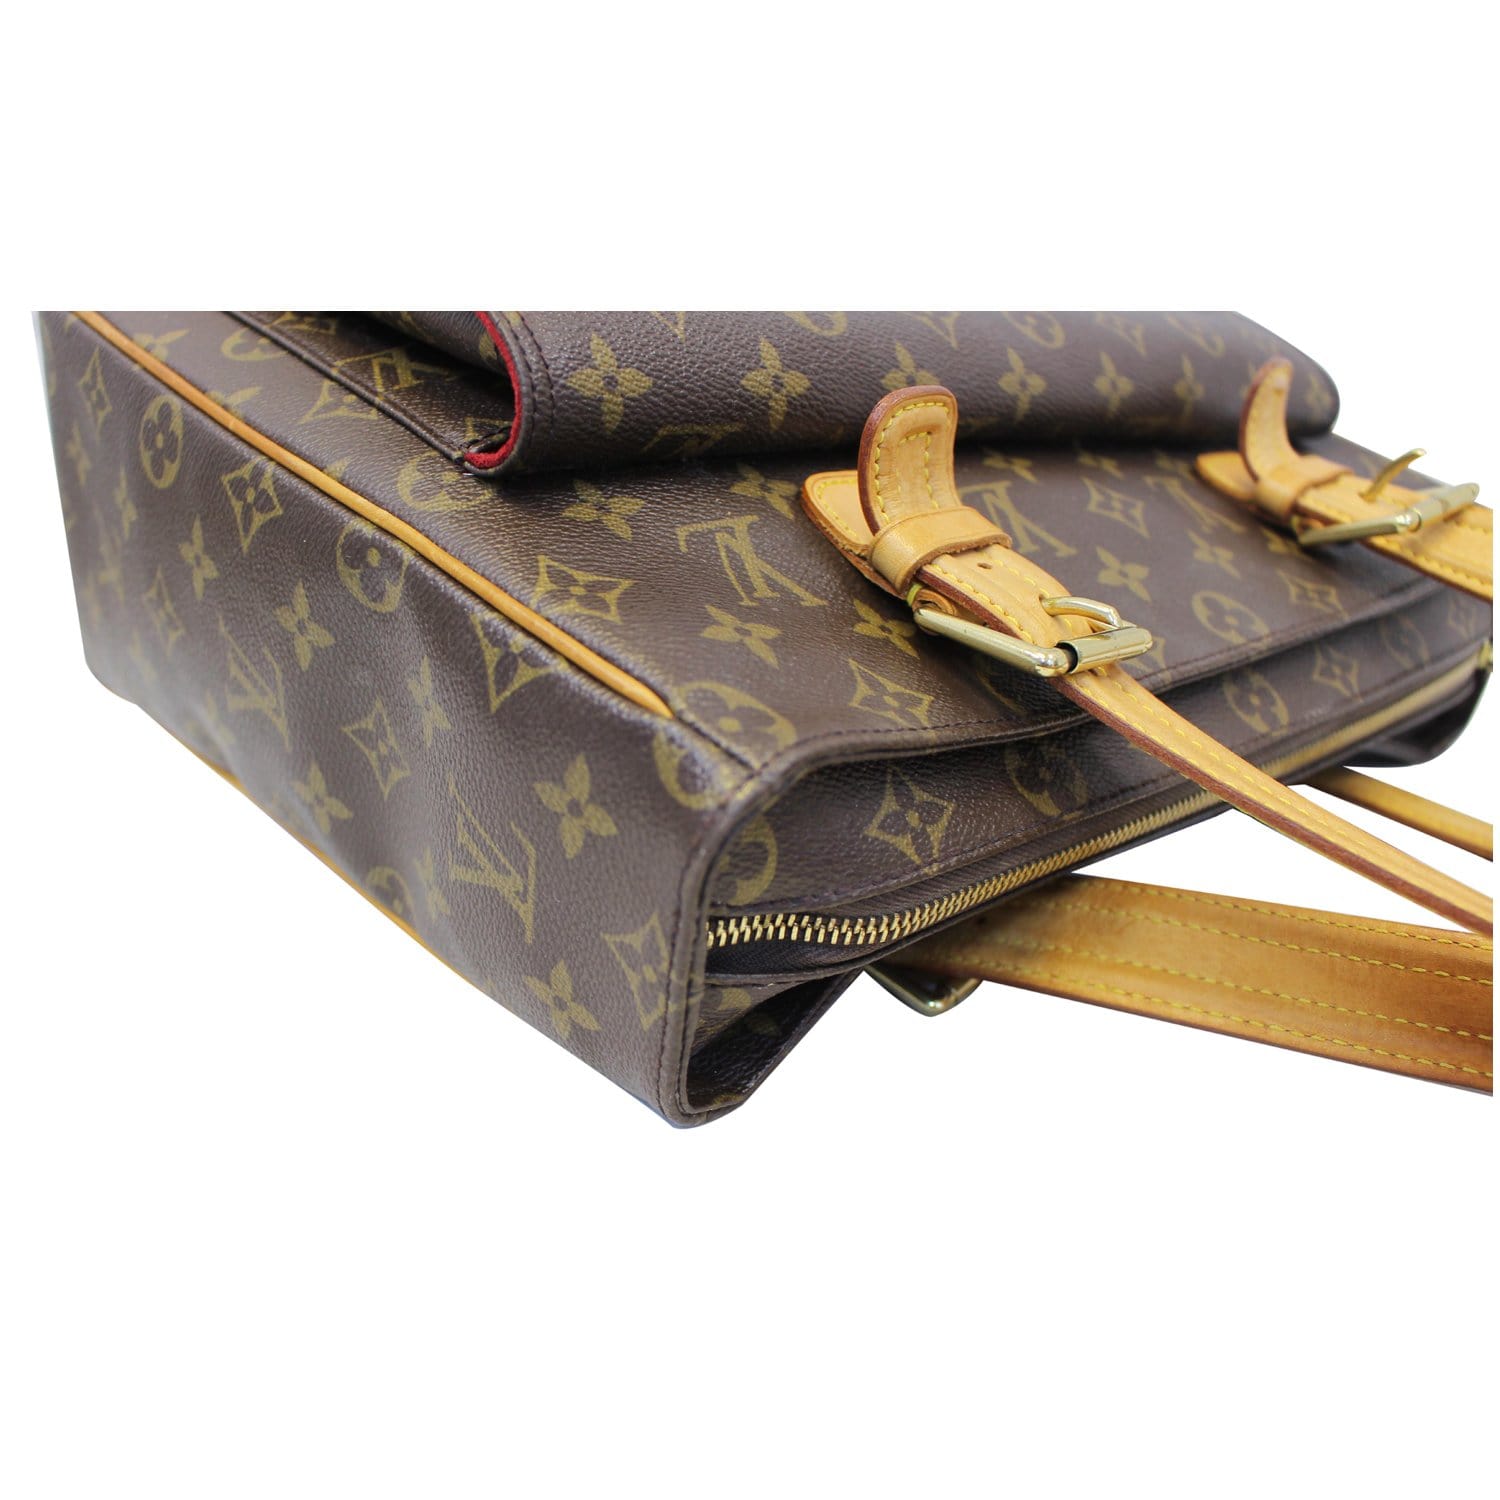 Louis Vuitton - Multipli Laptop Cite Tote Bag. Condition